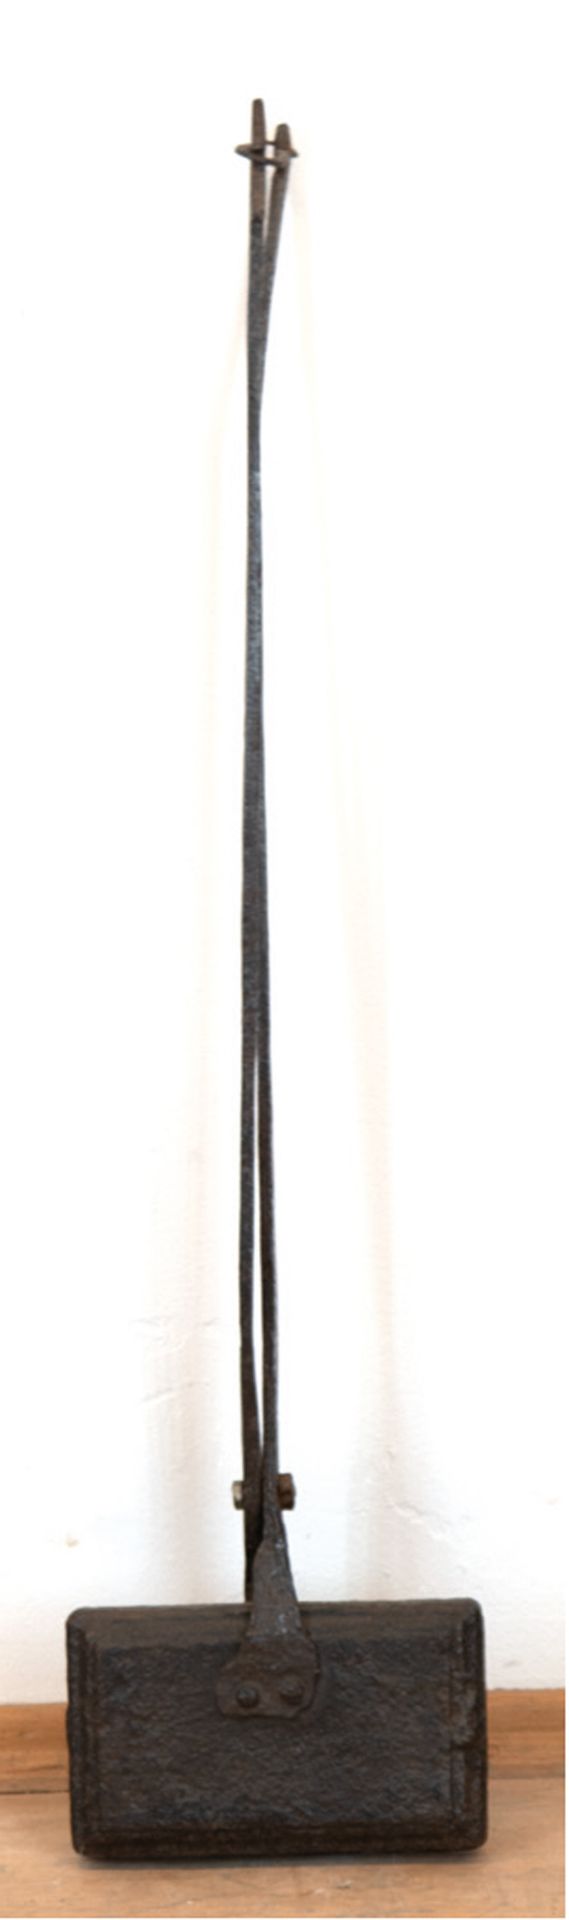 Waffeleisen, 19. Jh., Gußeisen, L. 82 cm